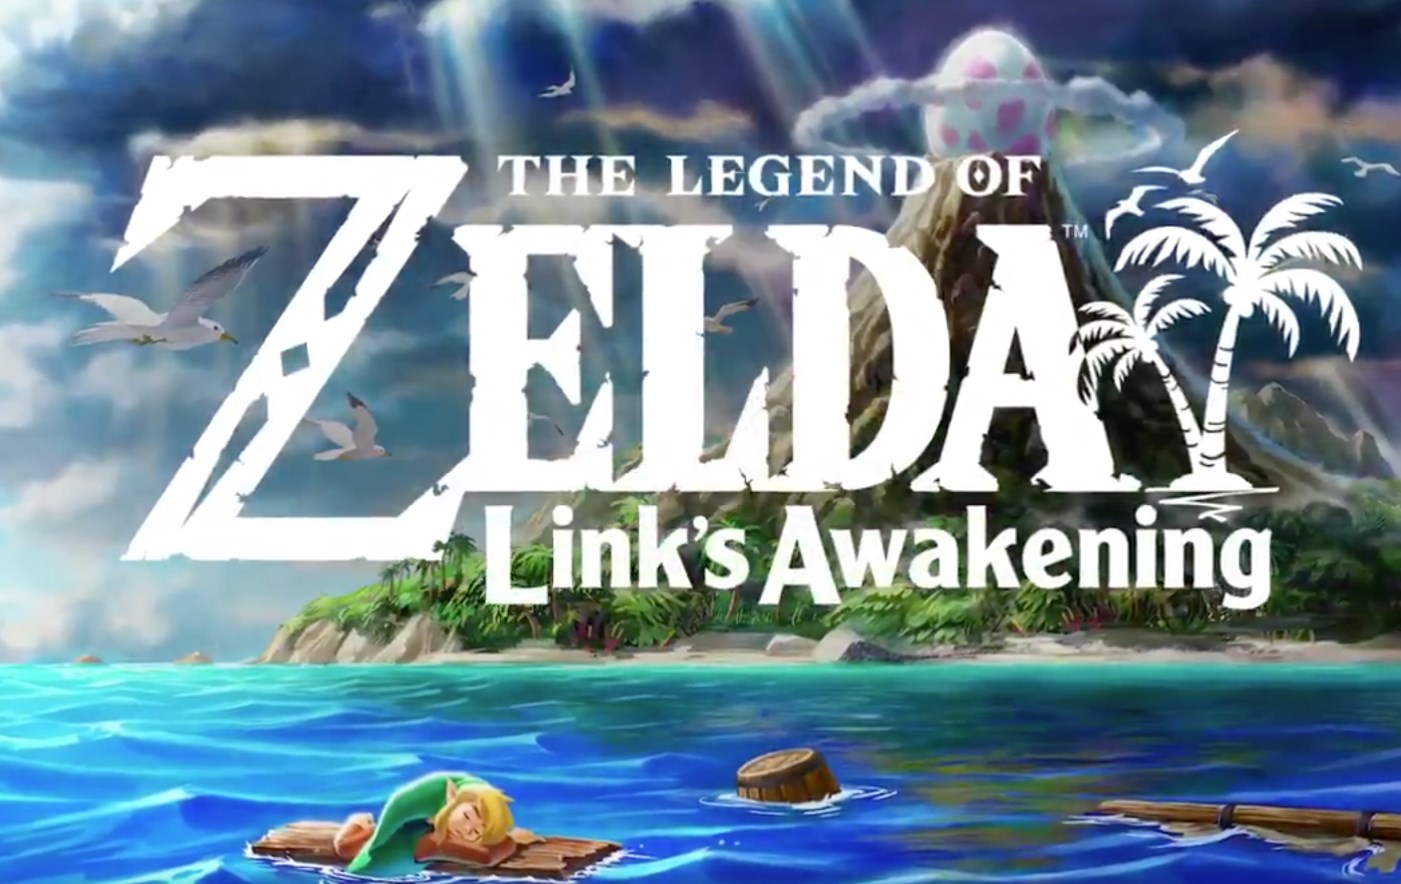 The Legend of Zelda: Link’s Awakening tendrá su remaster y se viene Super Mario Maker 2: todos los anuncios del Nintendo Direct